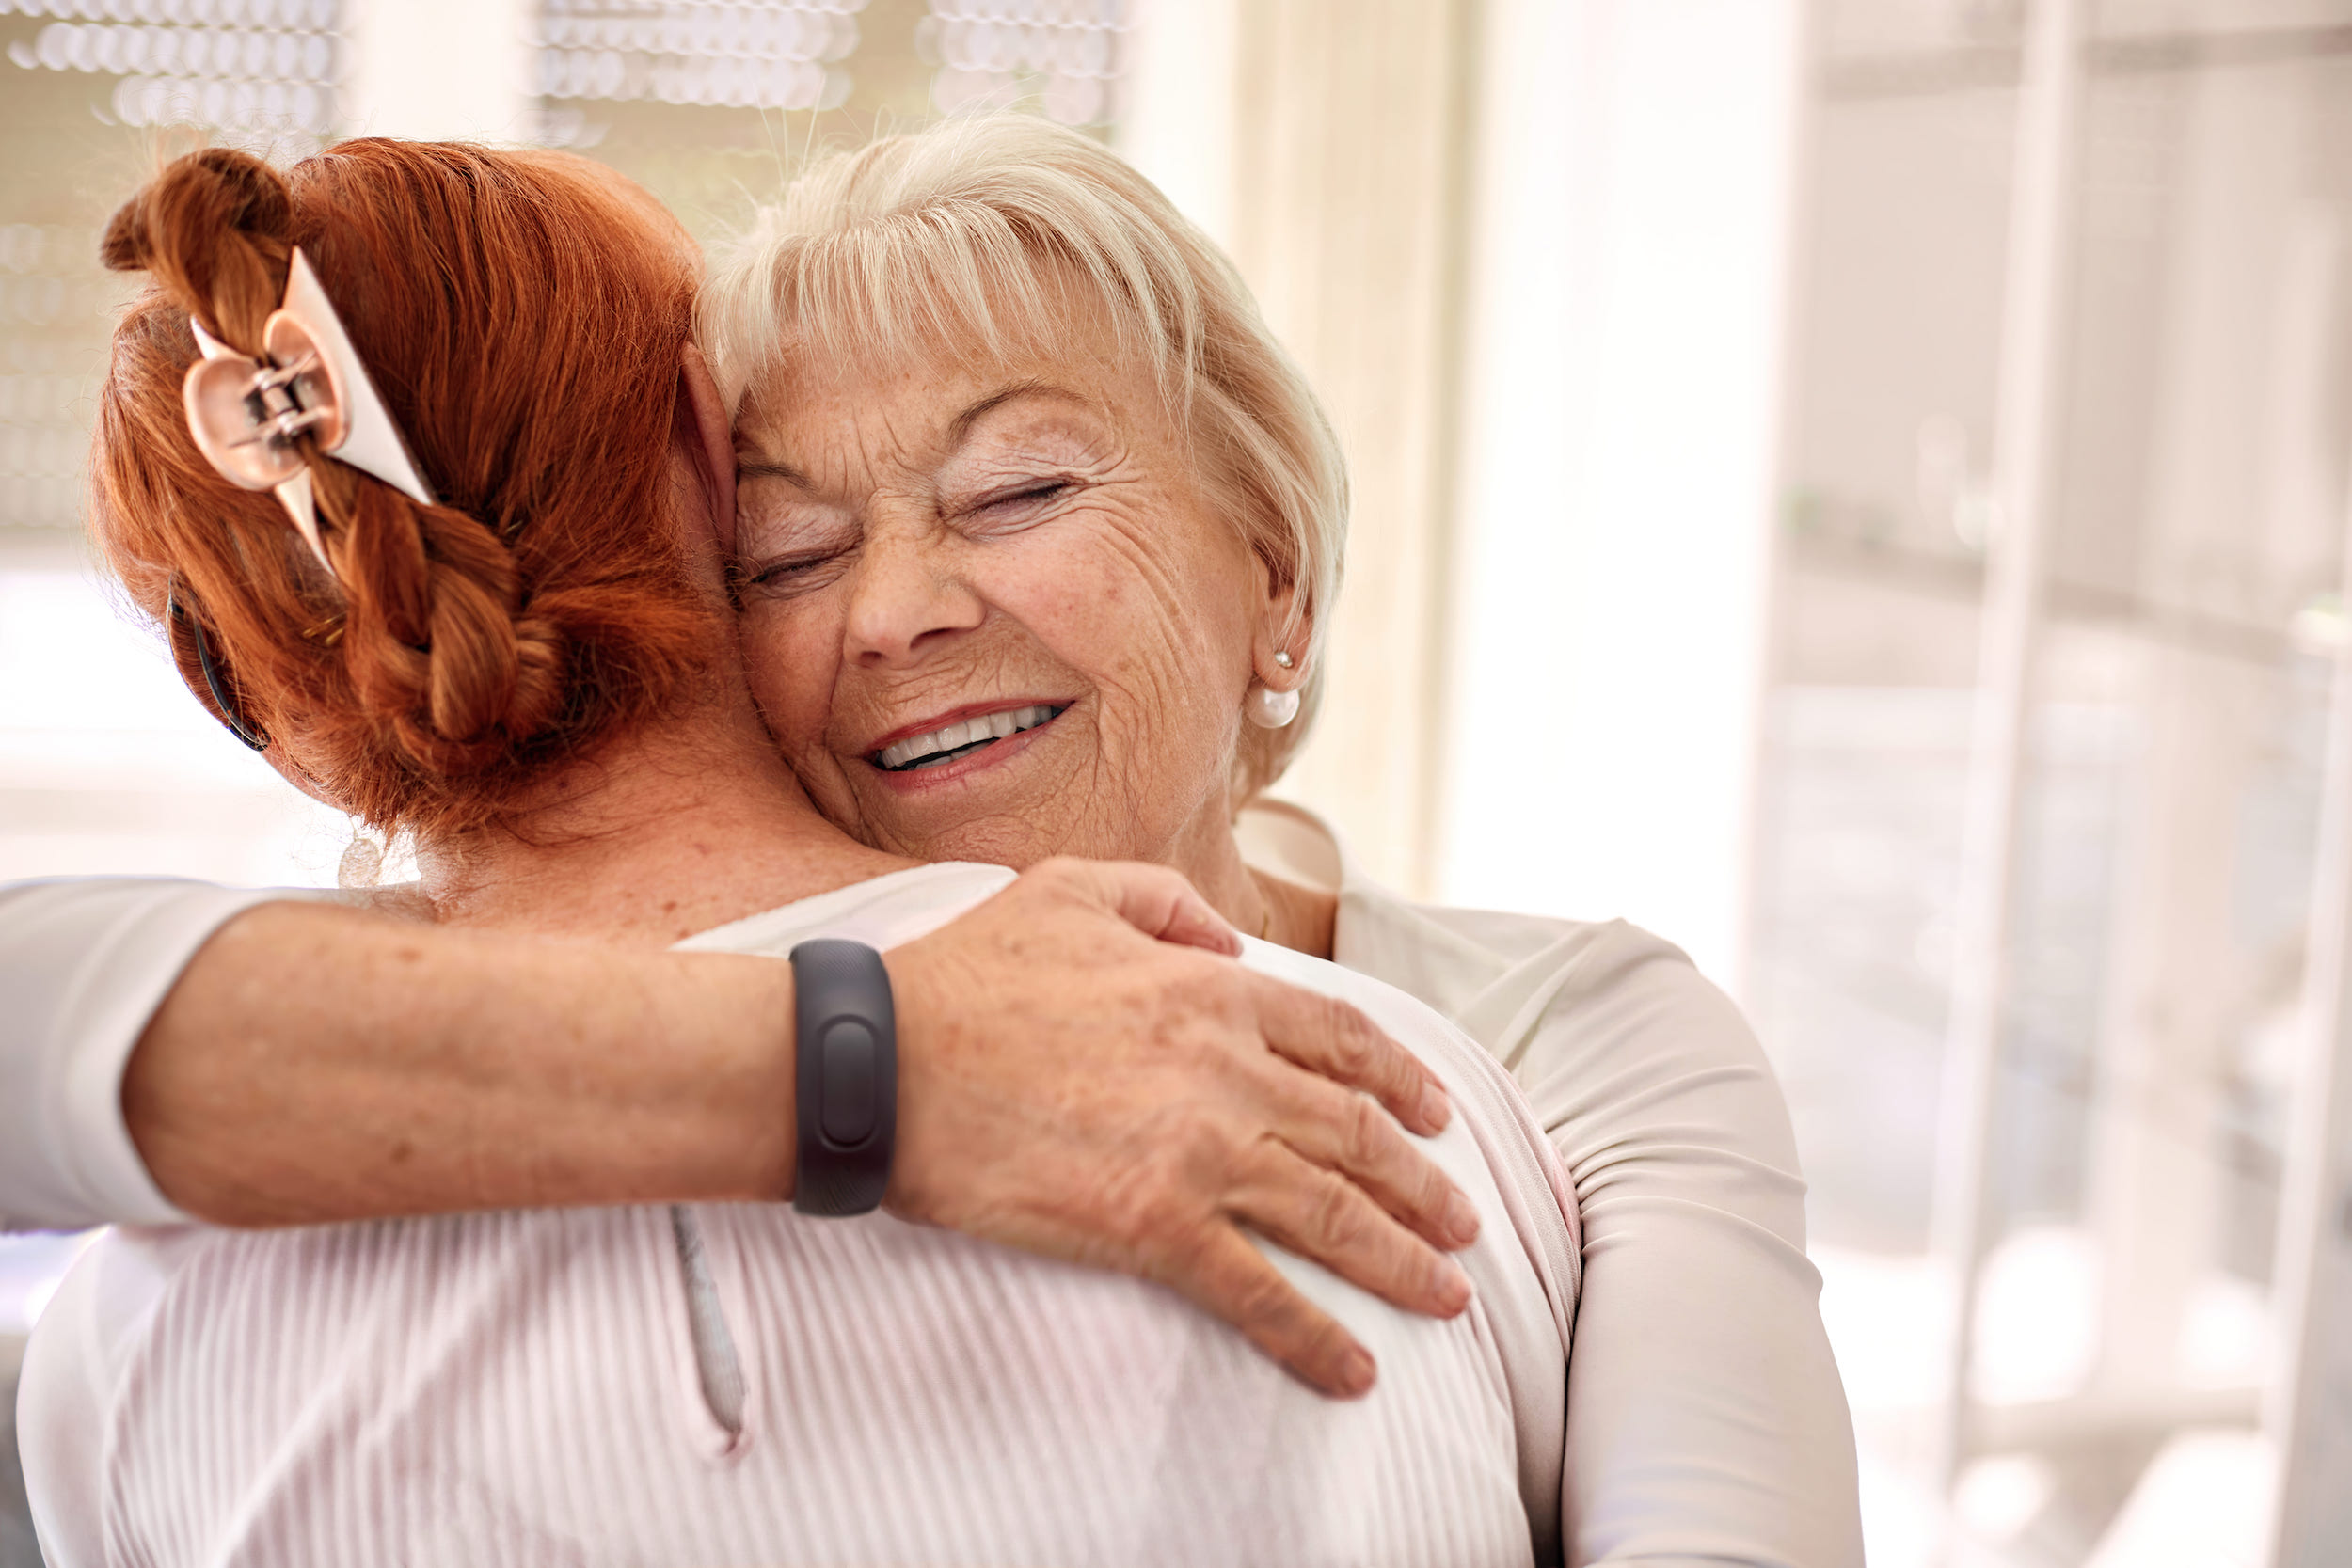 Eine ältere Dame umarmt eine andere Person. Am Handgelenk trägt sie ein Armband.